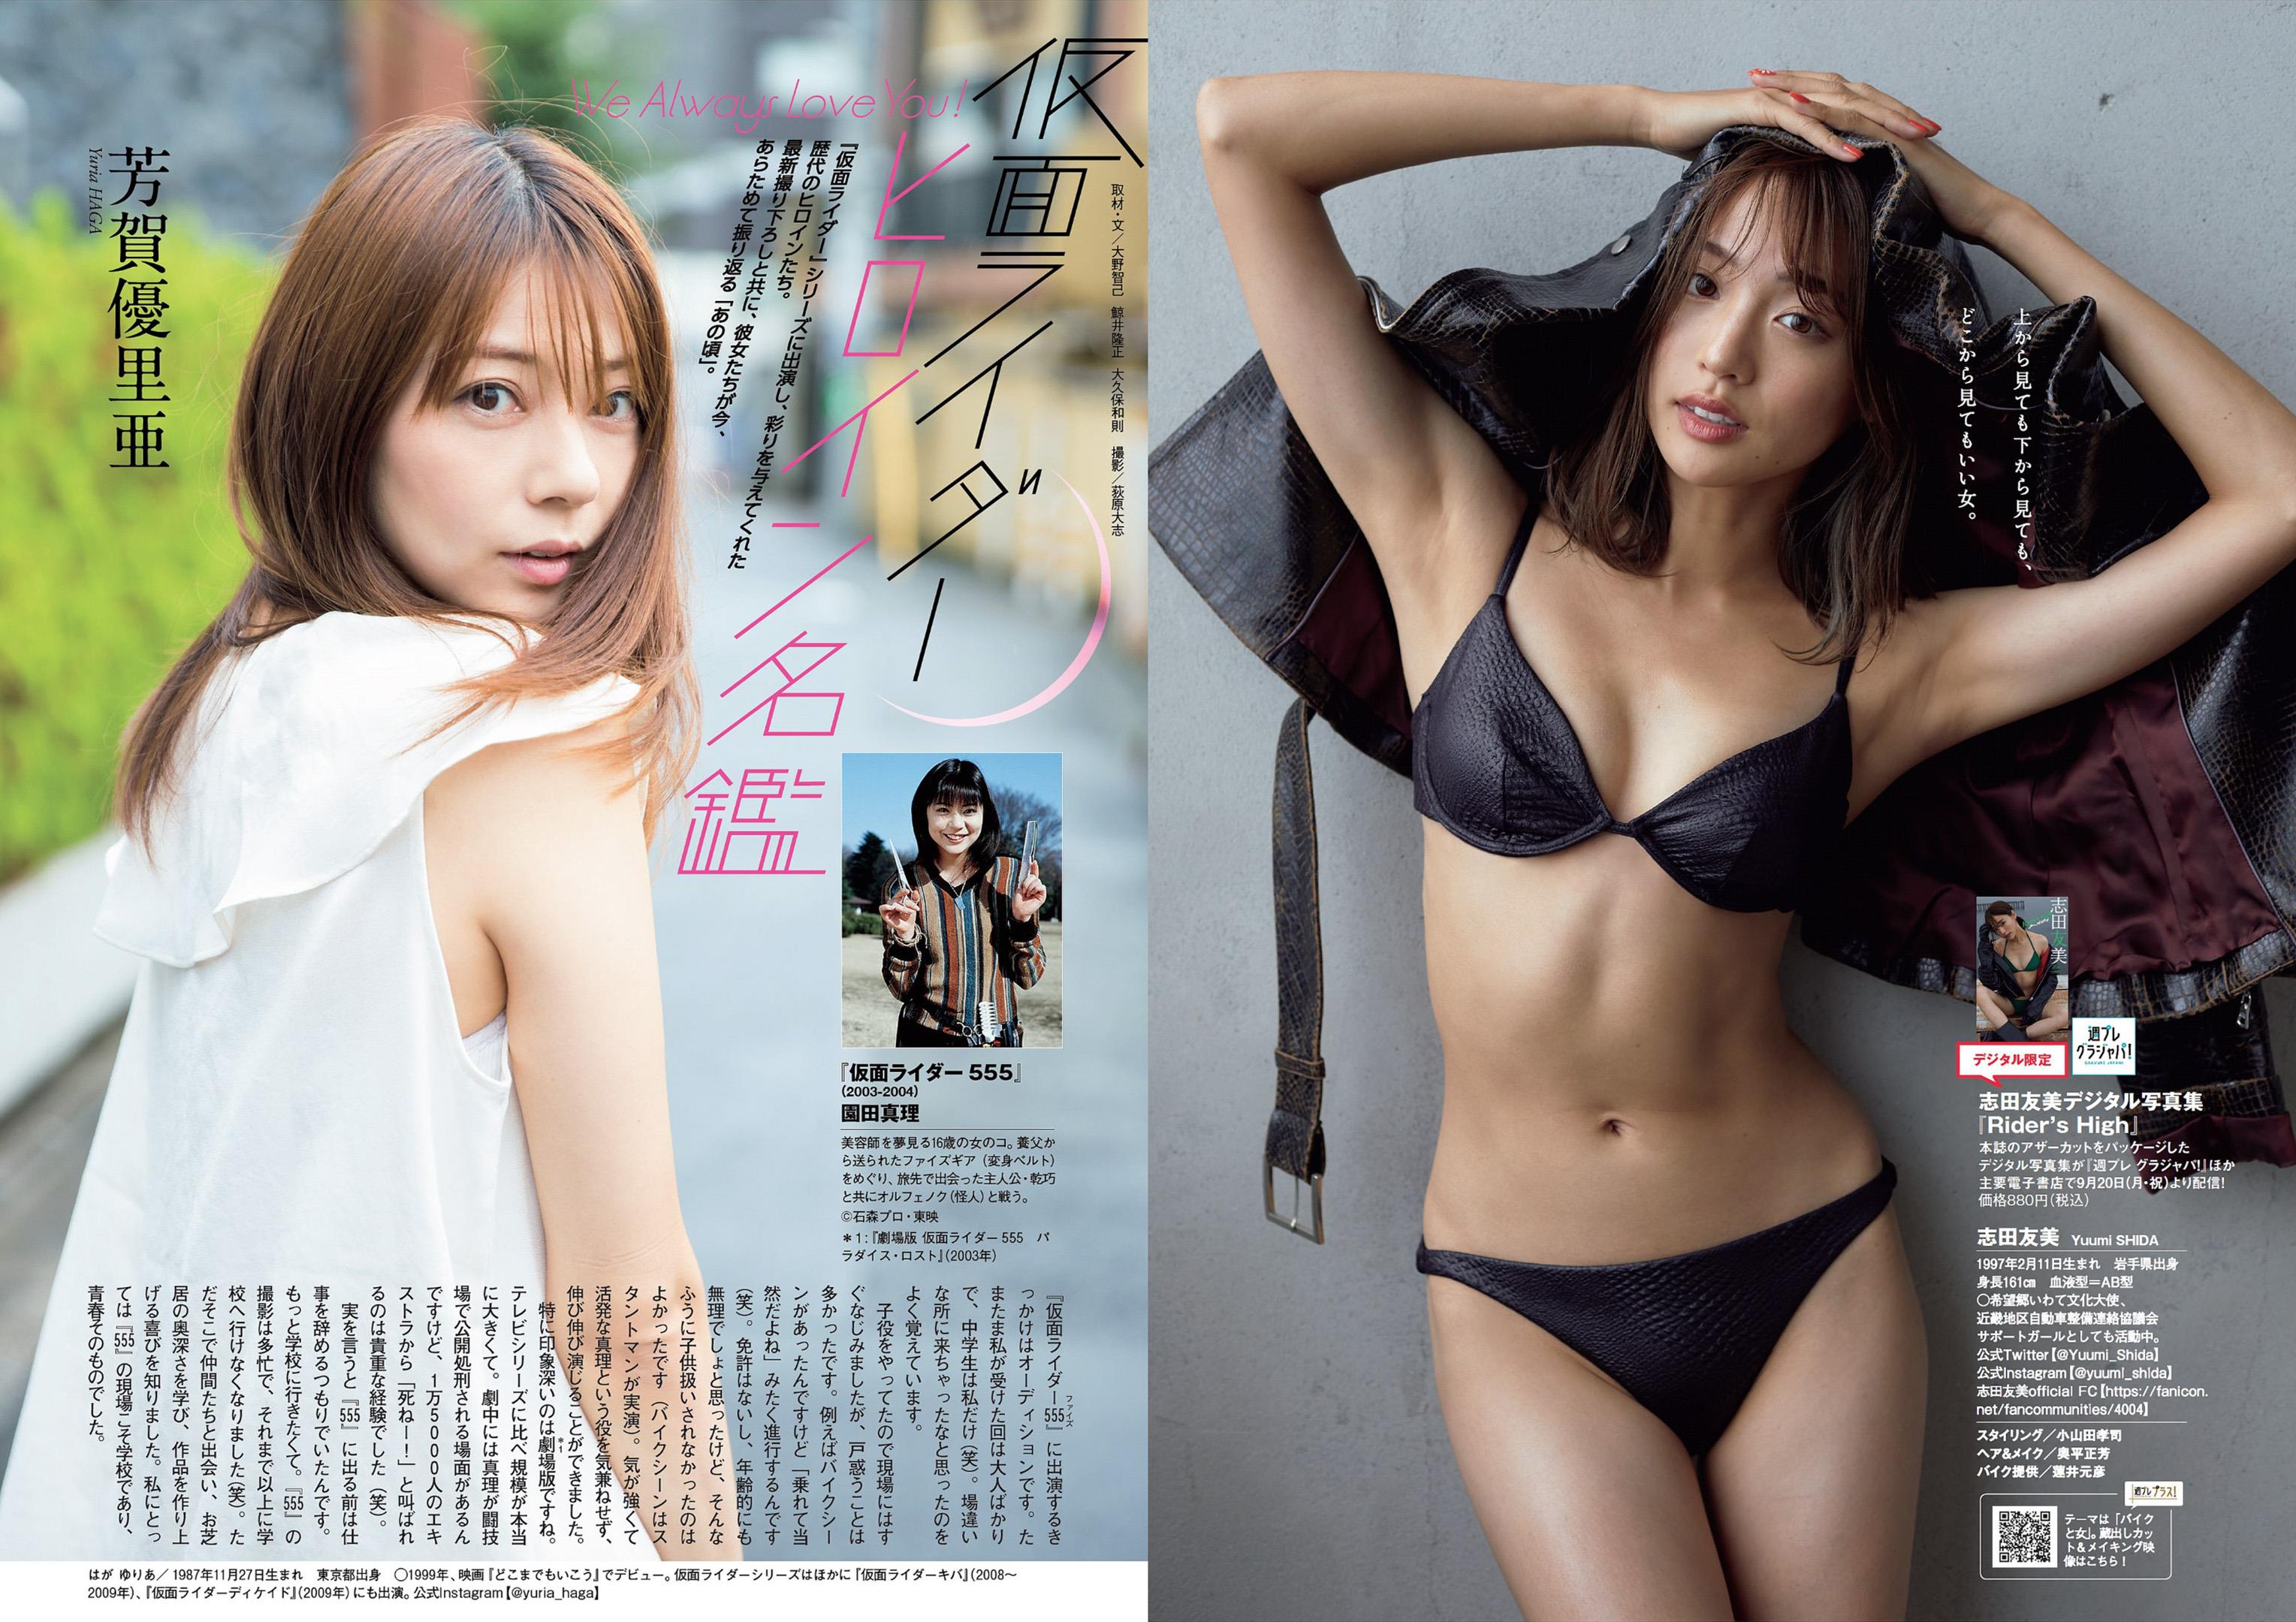 Weekly Playboy 2021 No.39-40  - 24.jpg